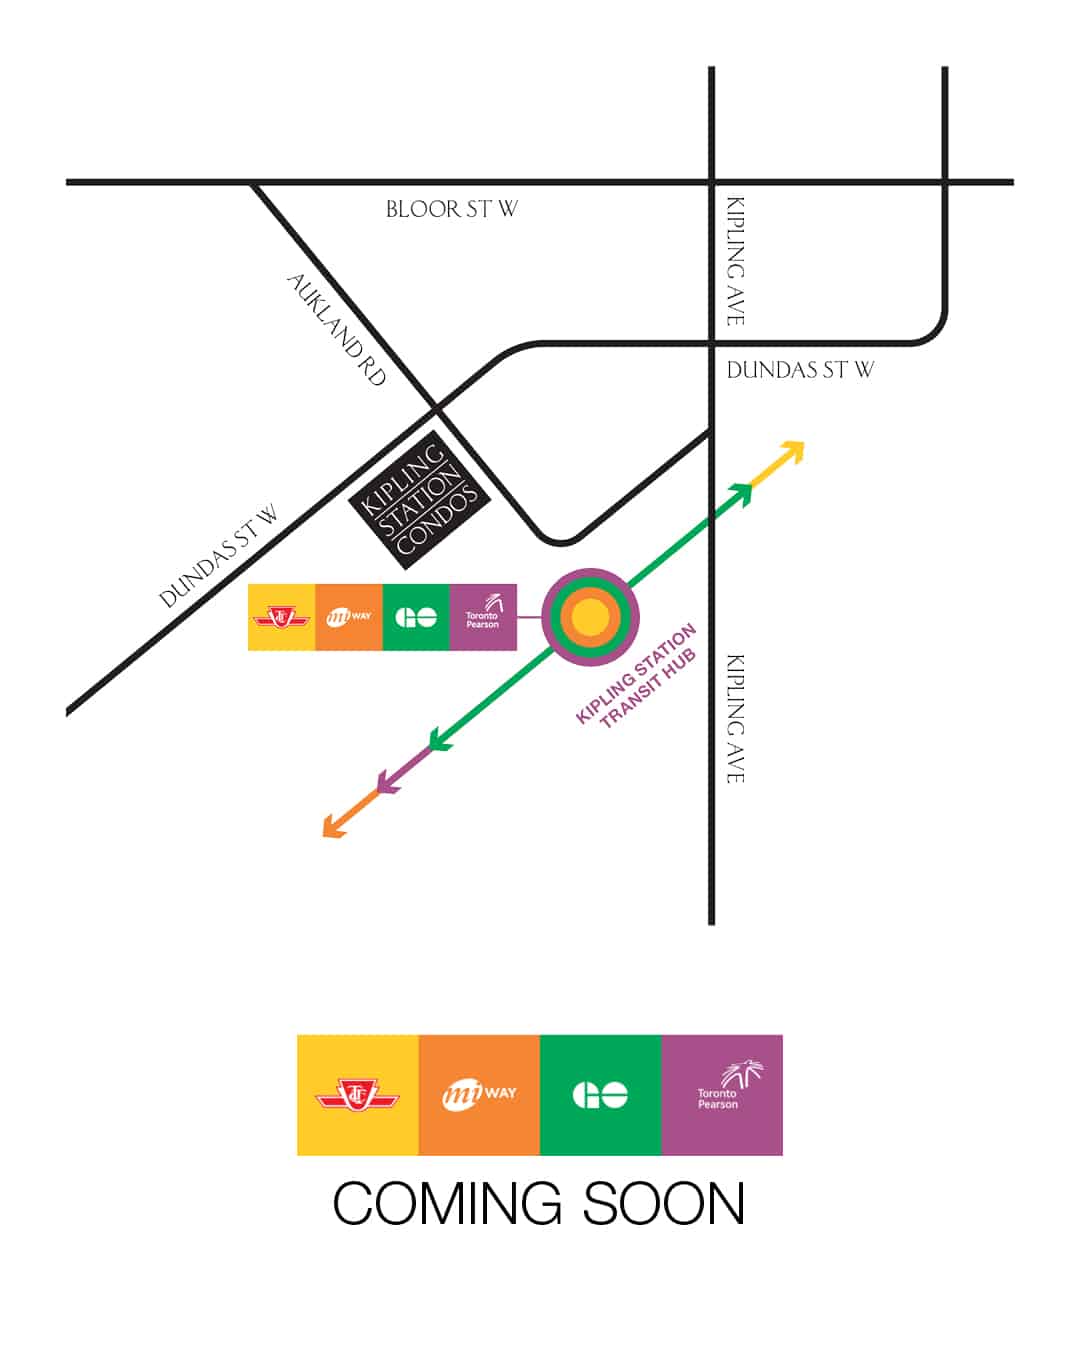 Kipling Station Condos in Etobicoke Coming Soon + MAP